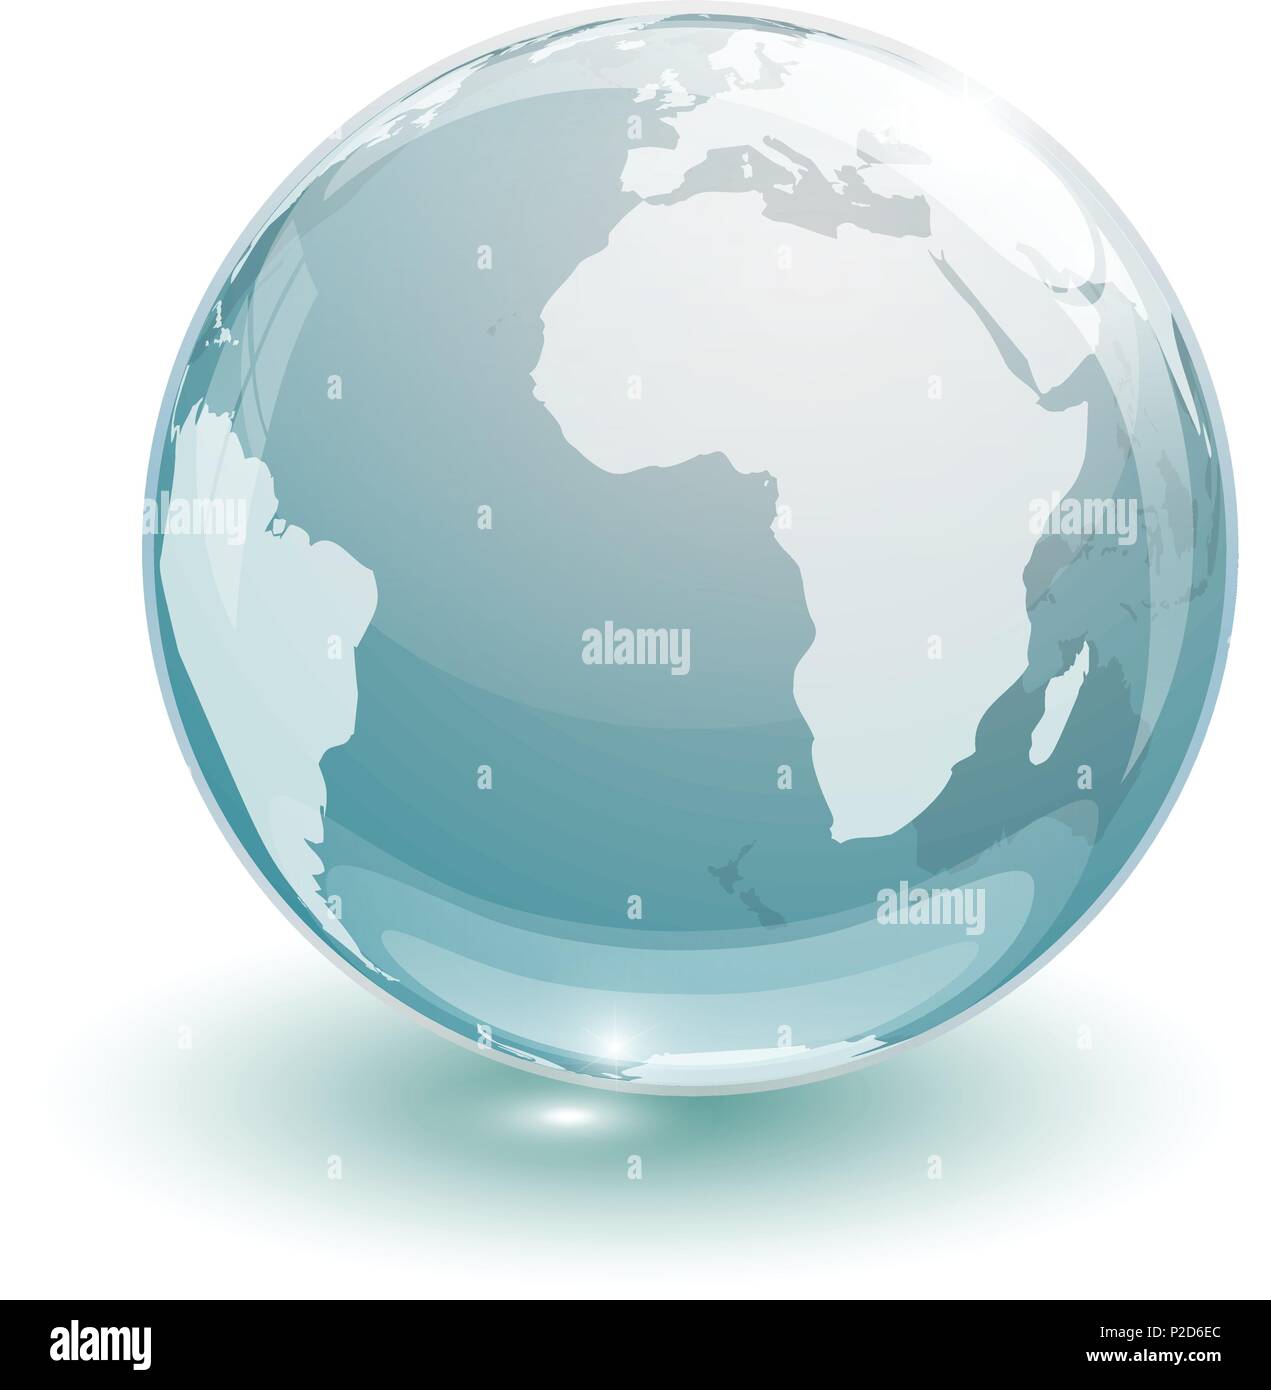 Glas globus erde Karte 3d-blau auf weißem Hintergrund Stock-Vektorgrafik -  Alamy